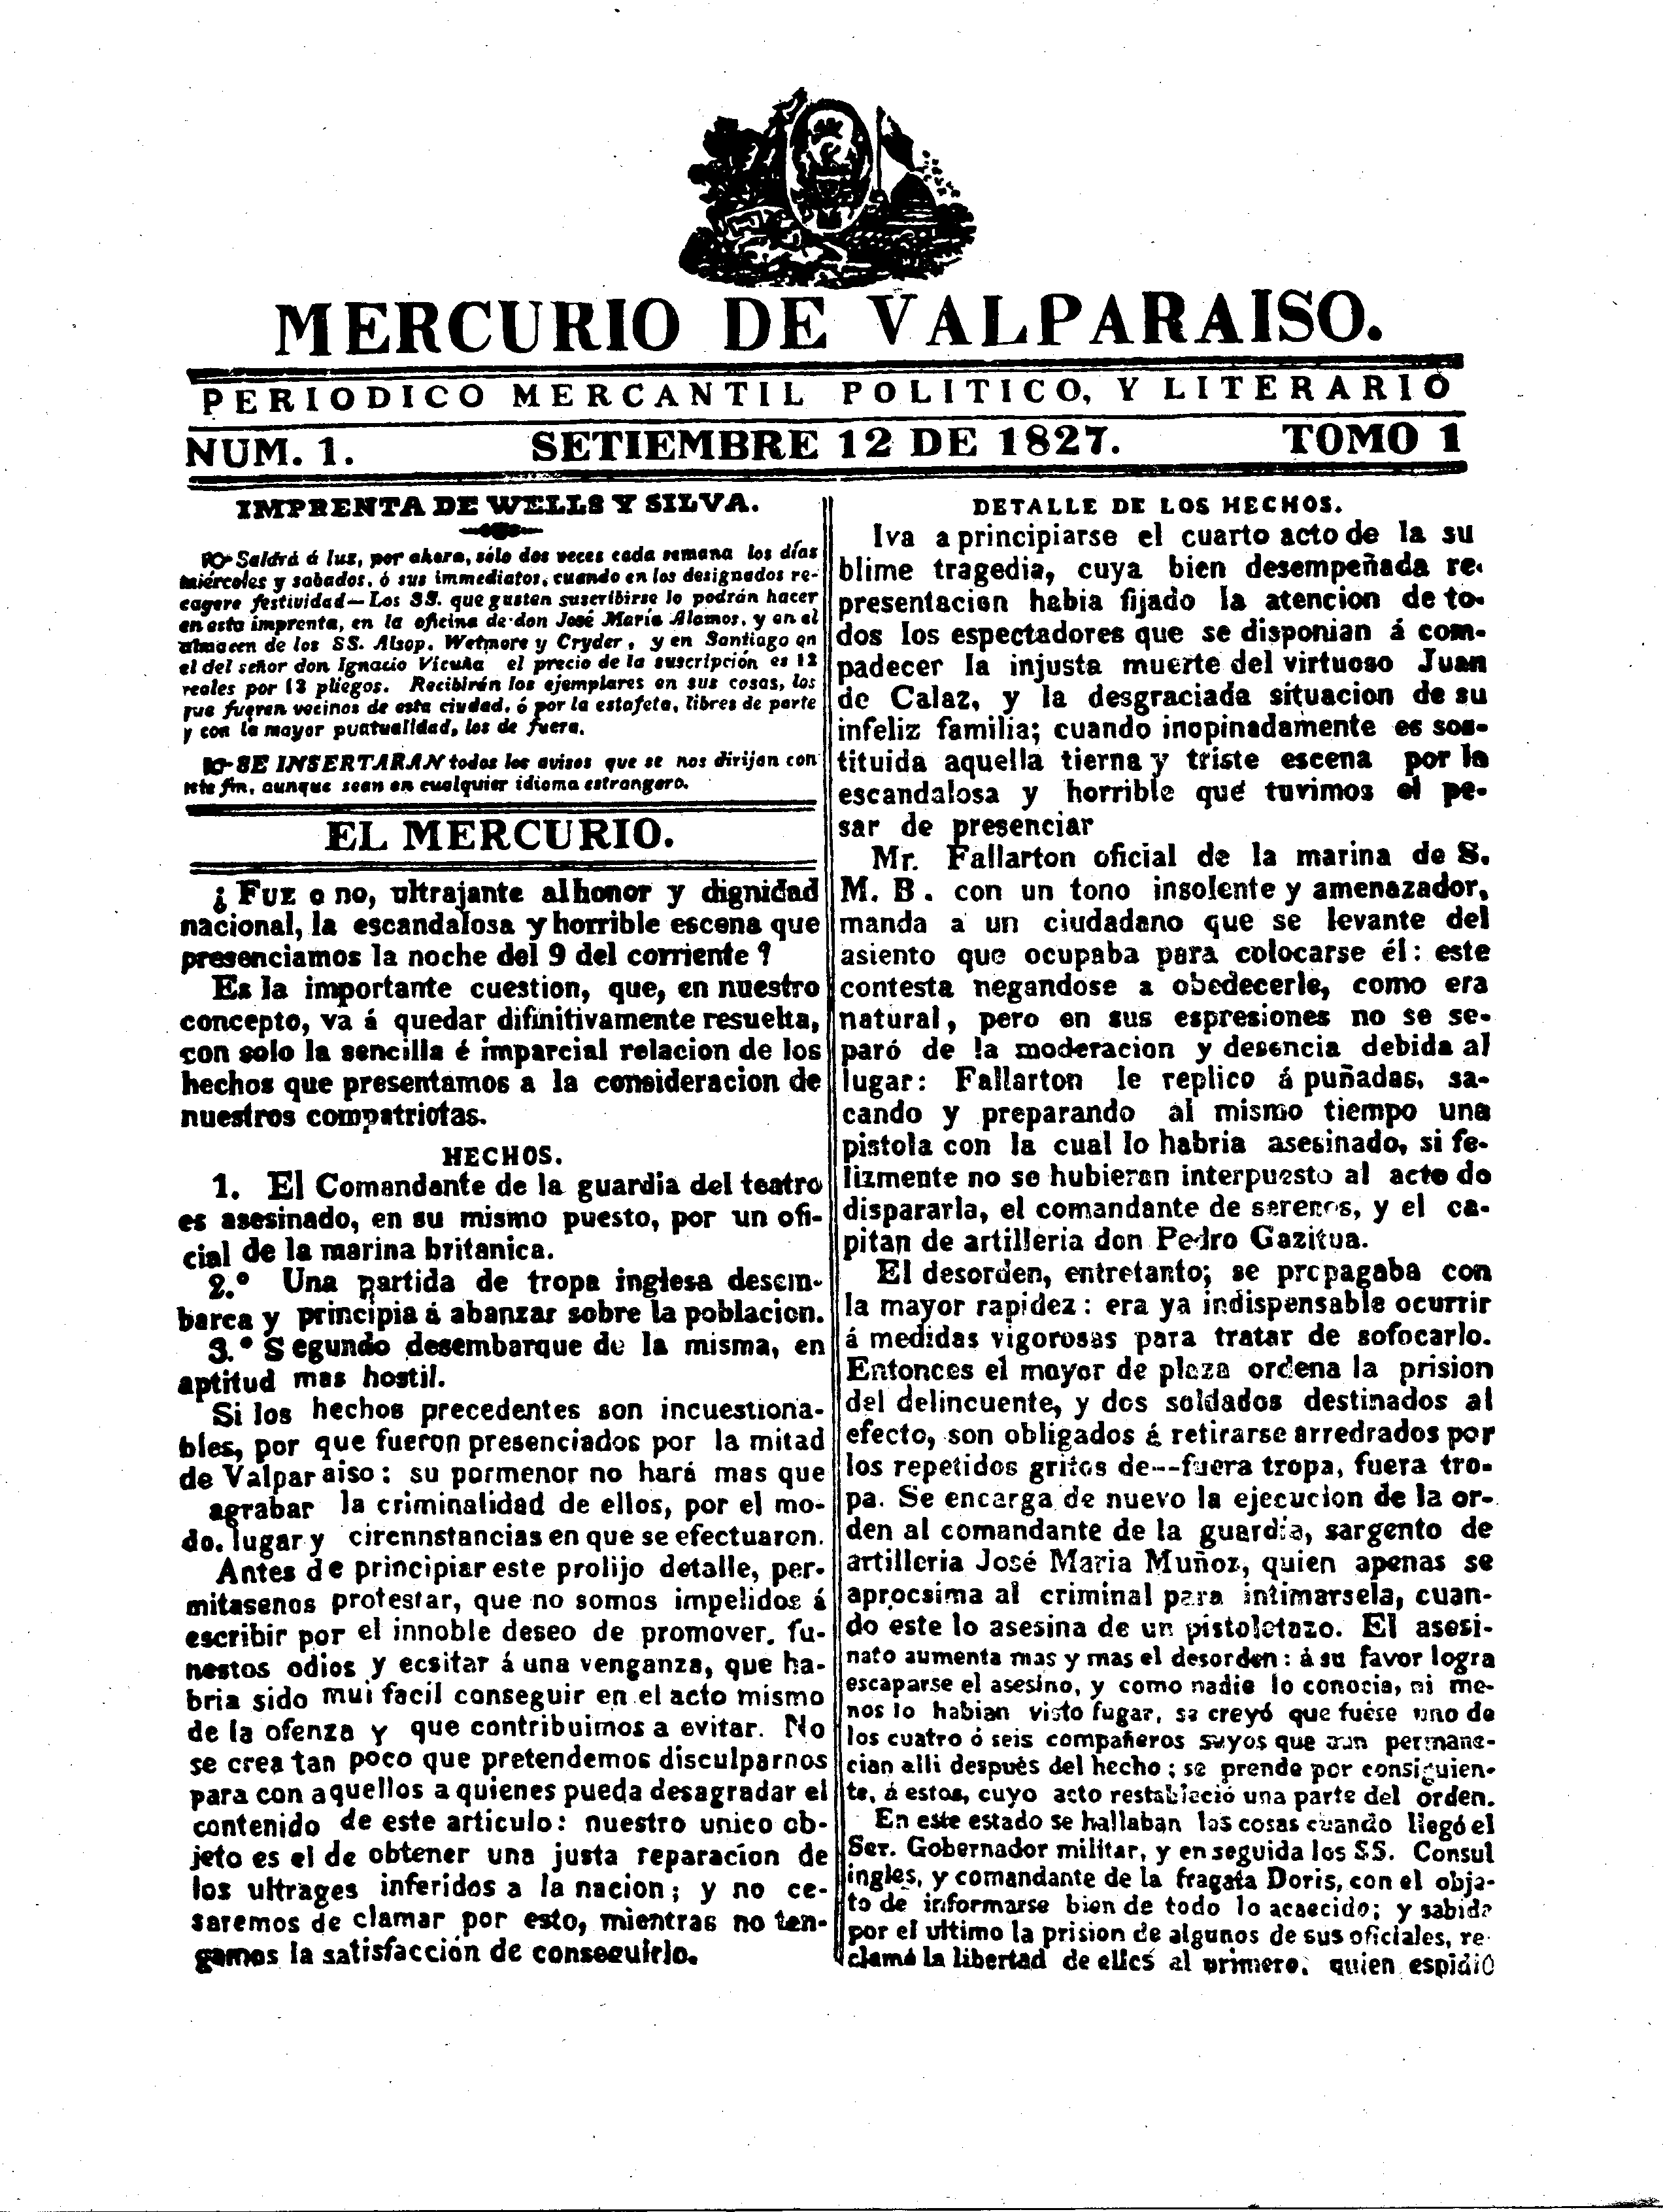 El Mercurio de Valparaíso - Wikipedia